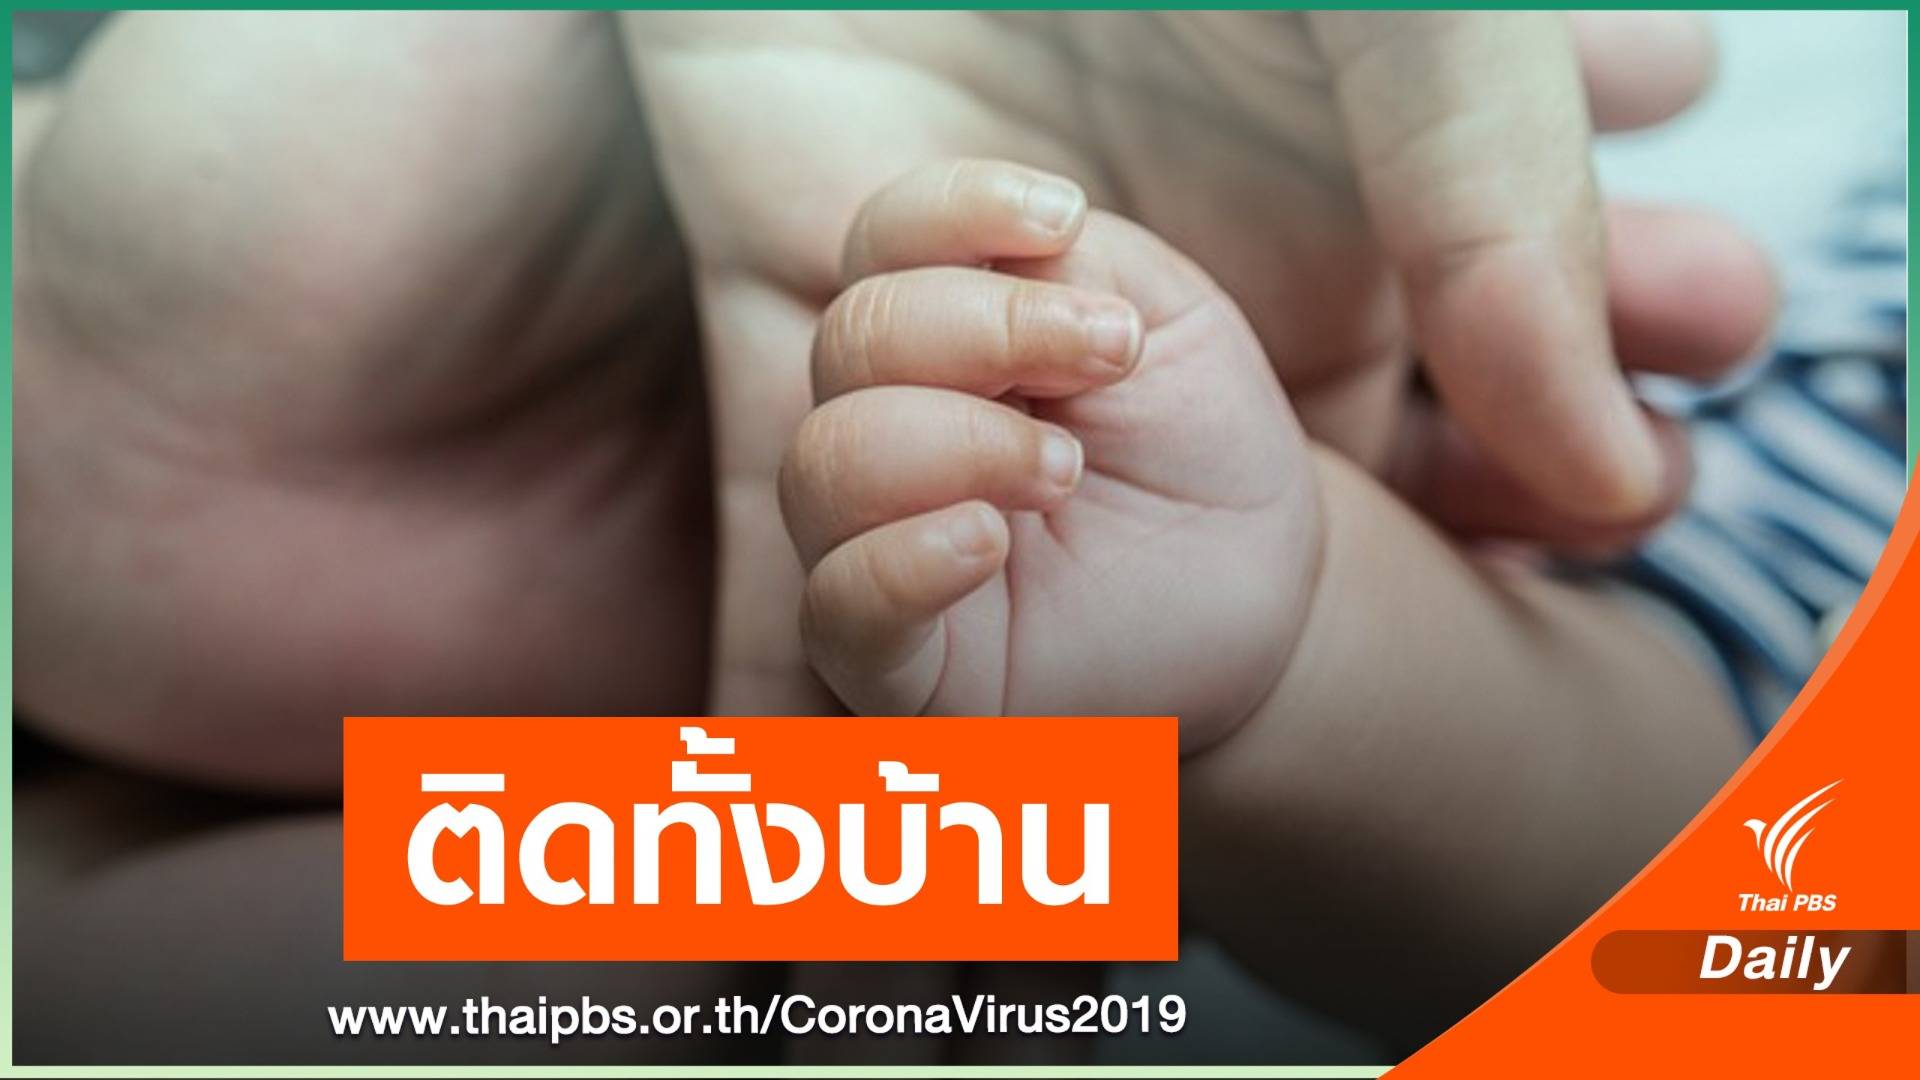 ทารกอินเดียวัย 7 เดือน เข้าไทย พบติด COVID-19 